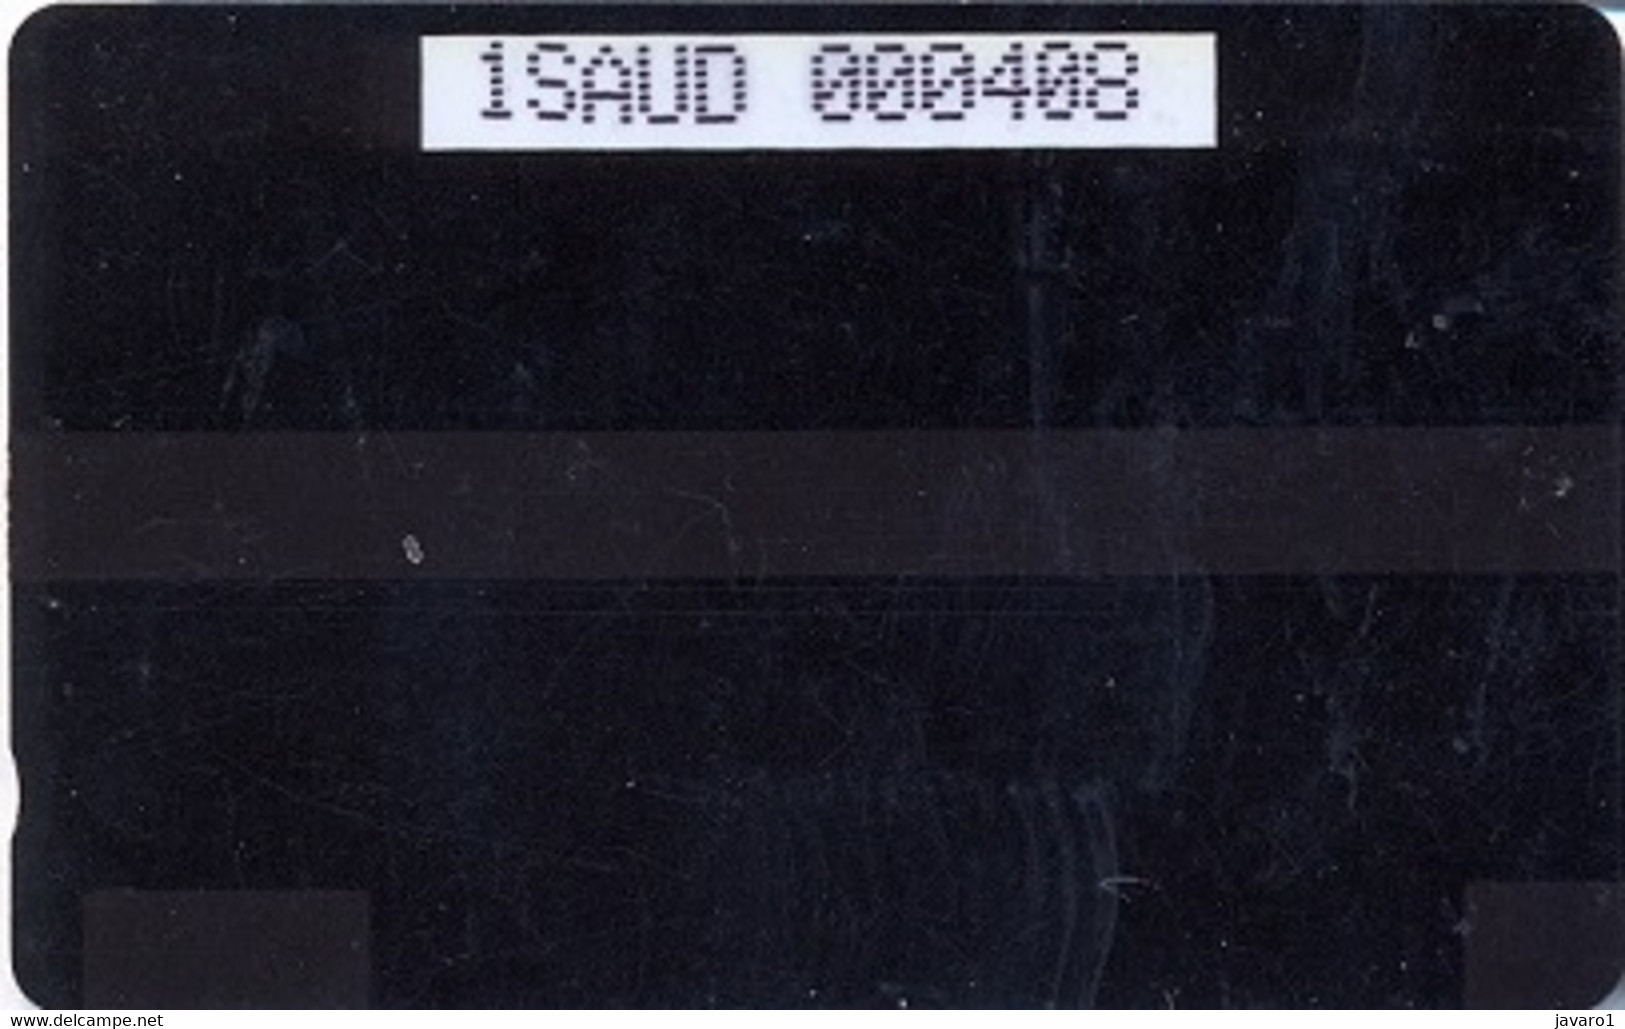 SAUDIARAB : SAUO10 980u Card Type 1 Test Card USED - Saudi Arabia